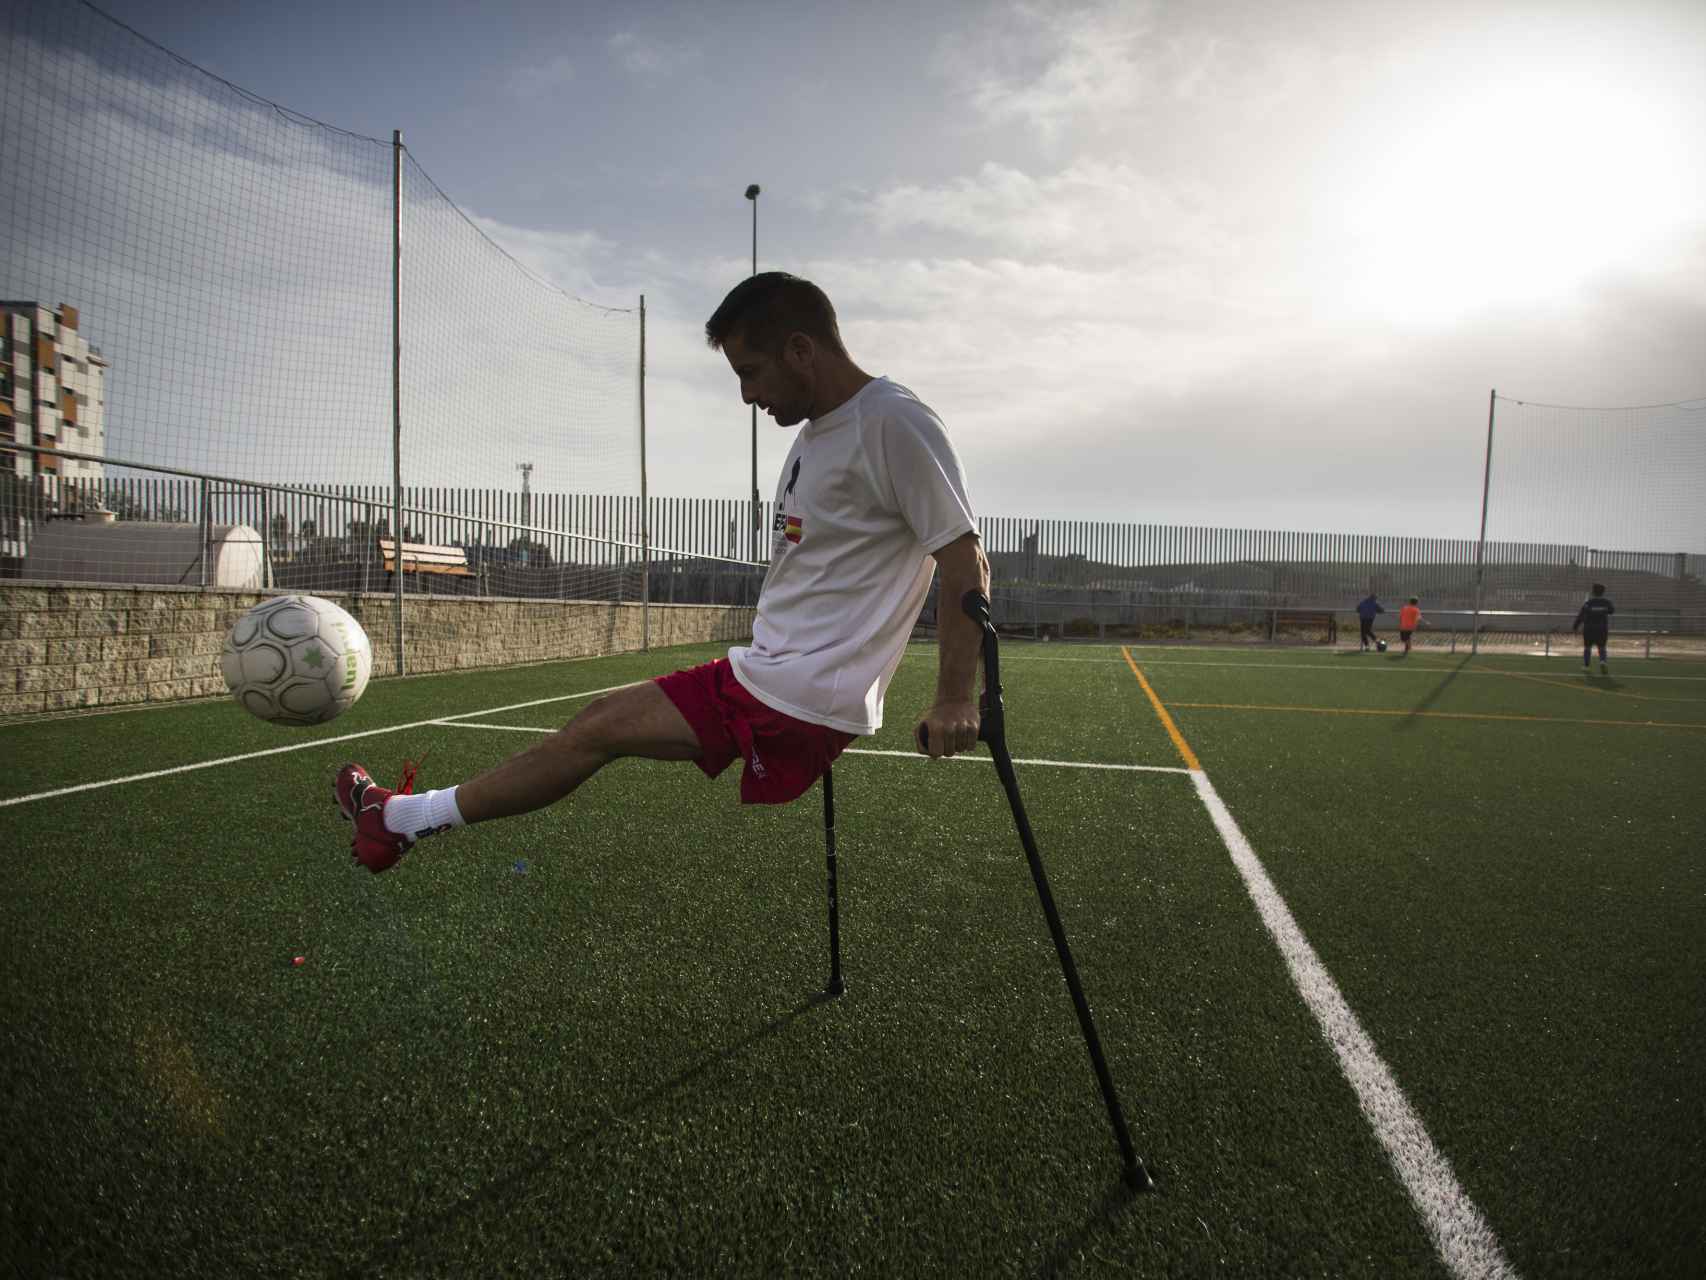 El jugador sevillano Francisco Vaquero, que perdió su pierna por un accidente laboral en el Puerto de Algeciras.